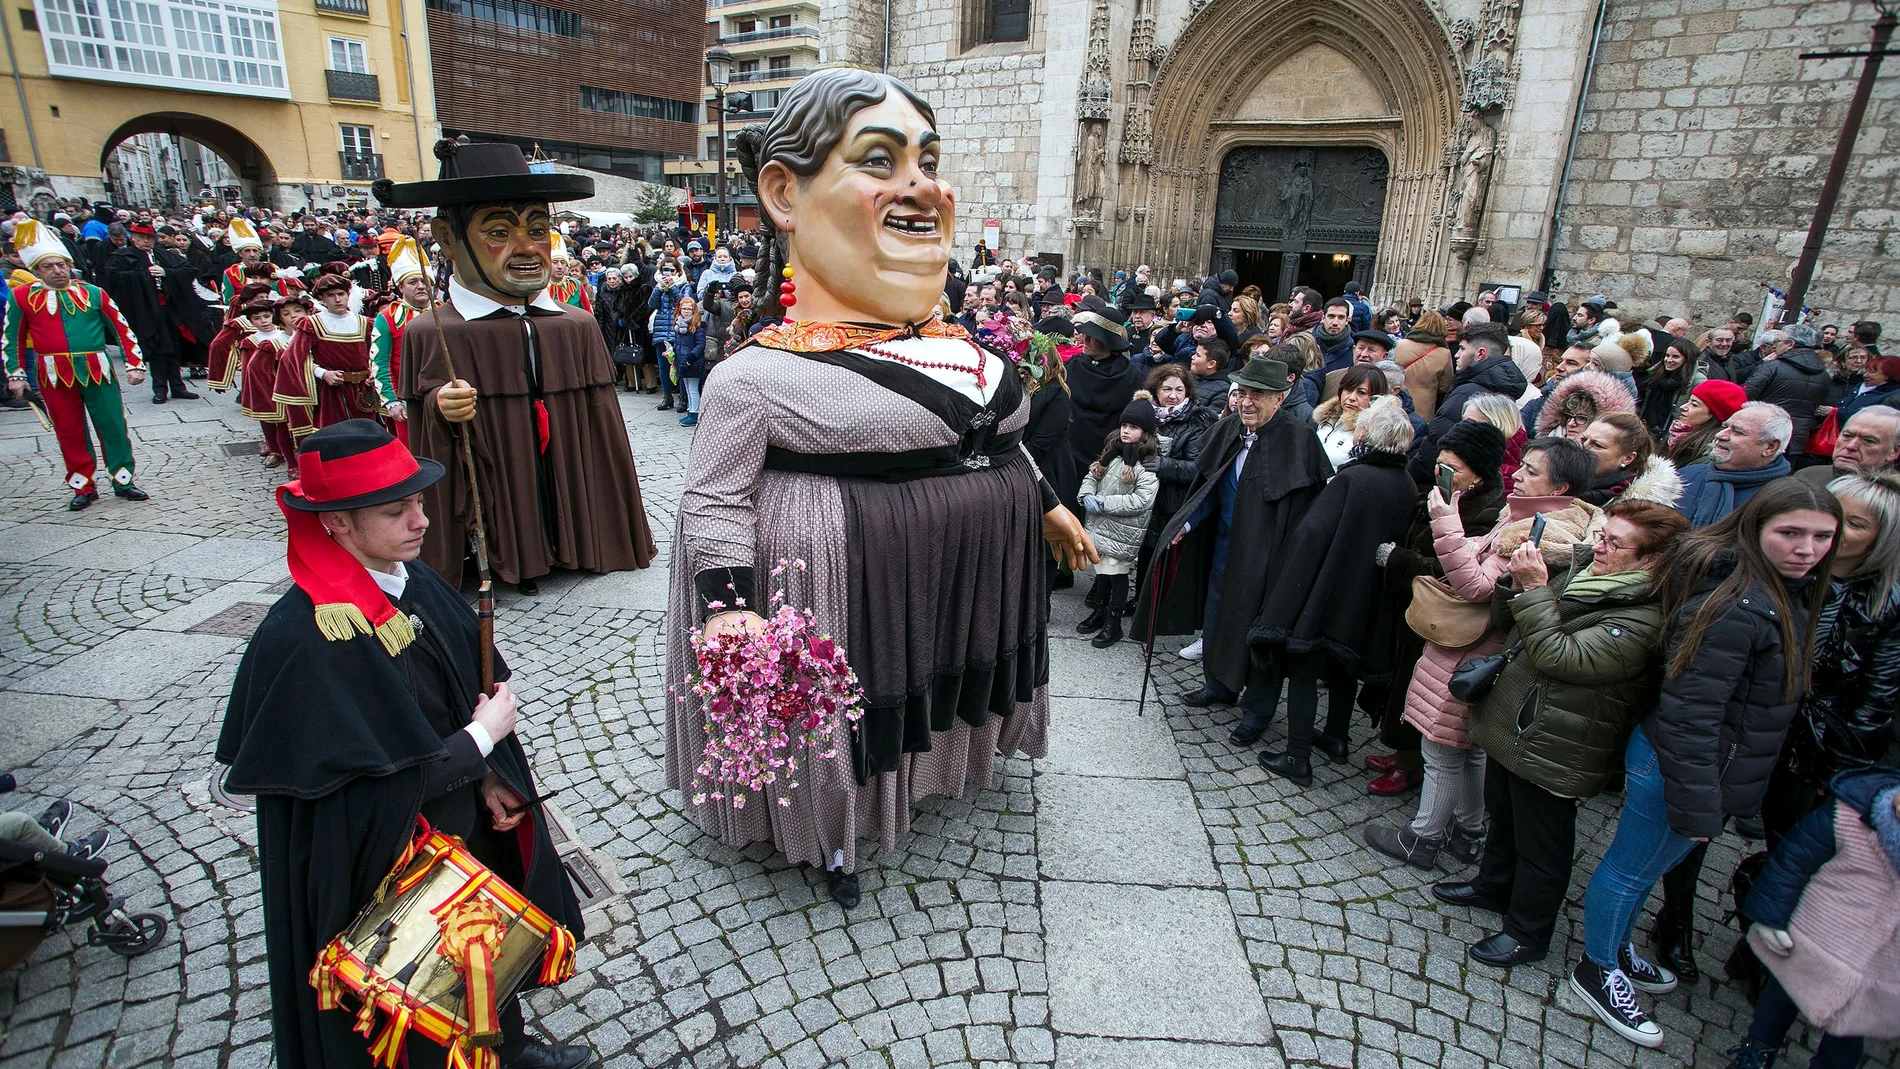 Festividad de San Lesmes Abad, patrono de Burgos, con la celebración de una misa solemne en su honor y el tradicional reparto de panecillos, acompañados de productos típicos de la tierra.